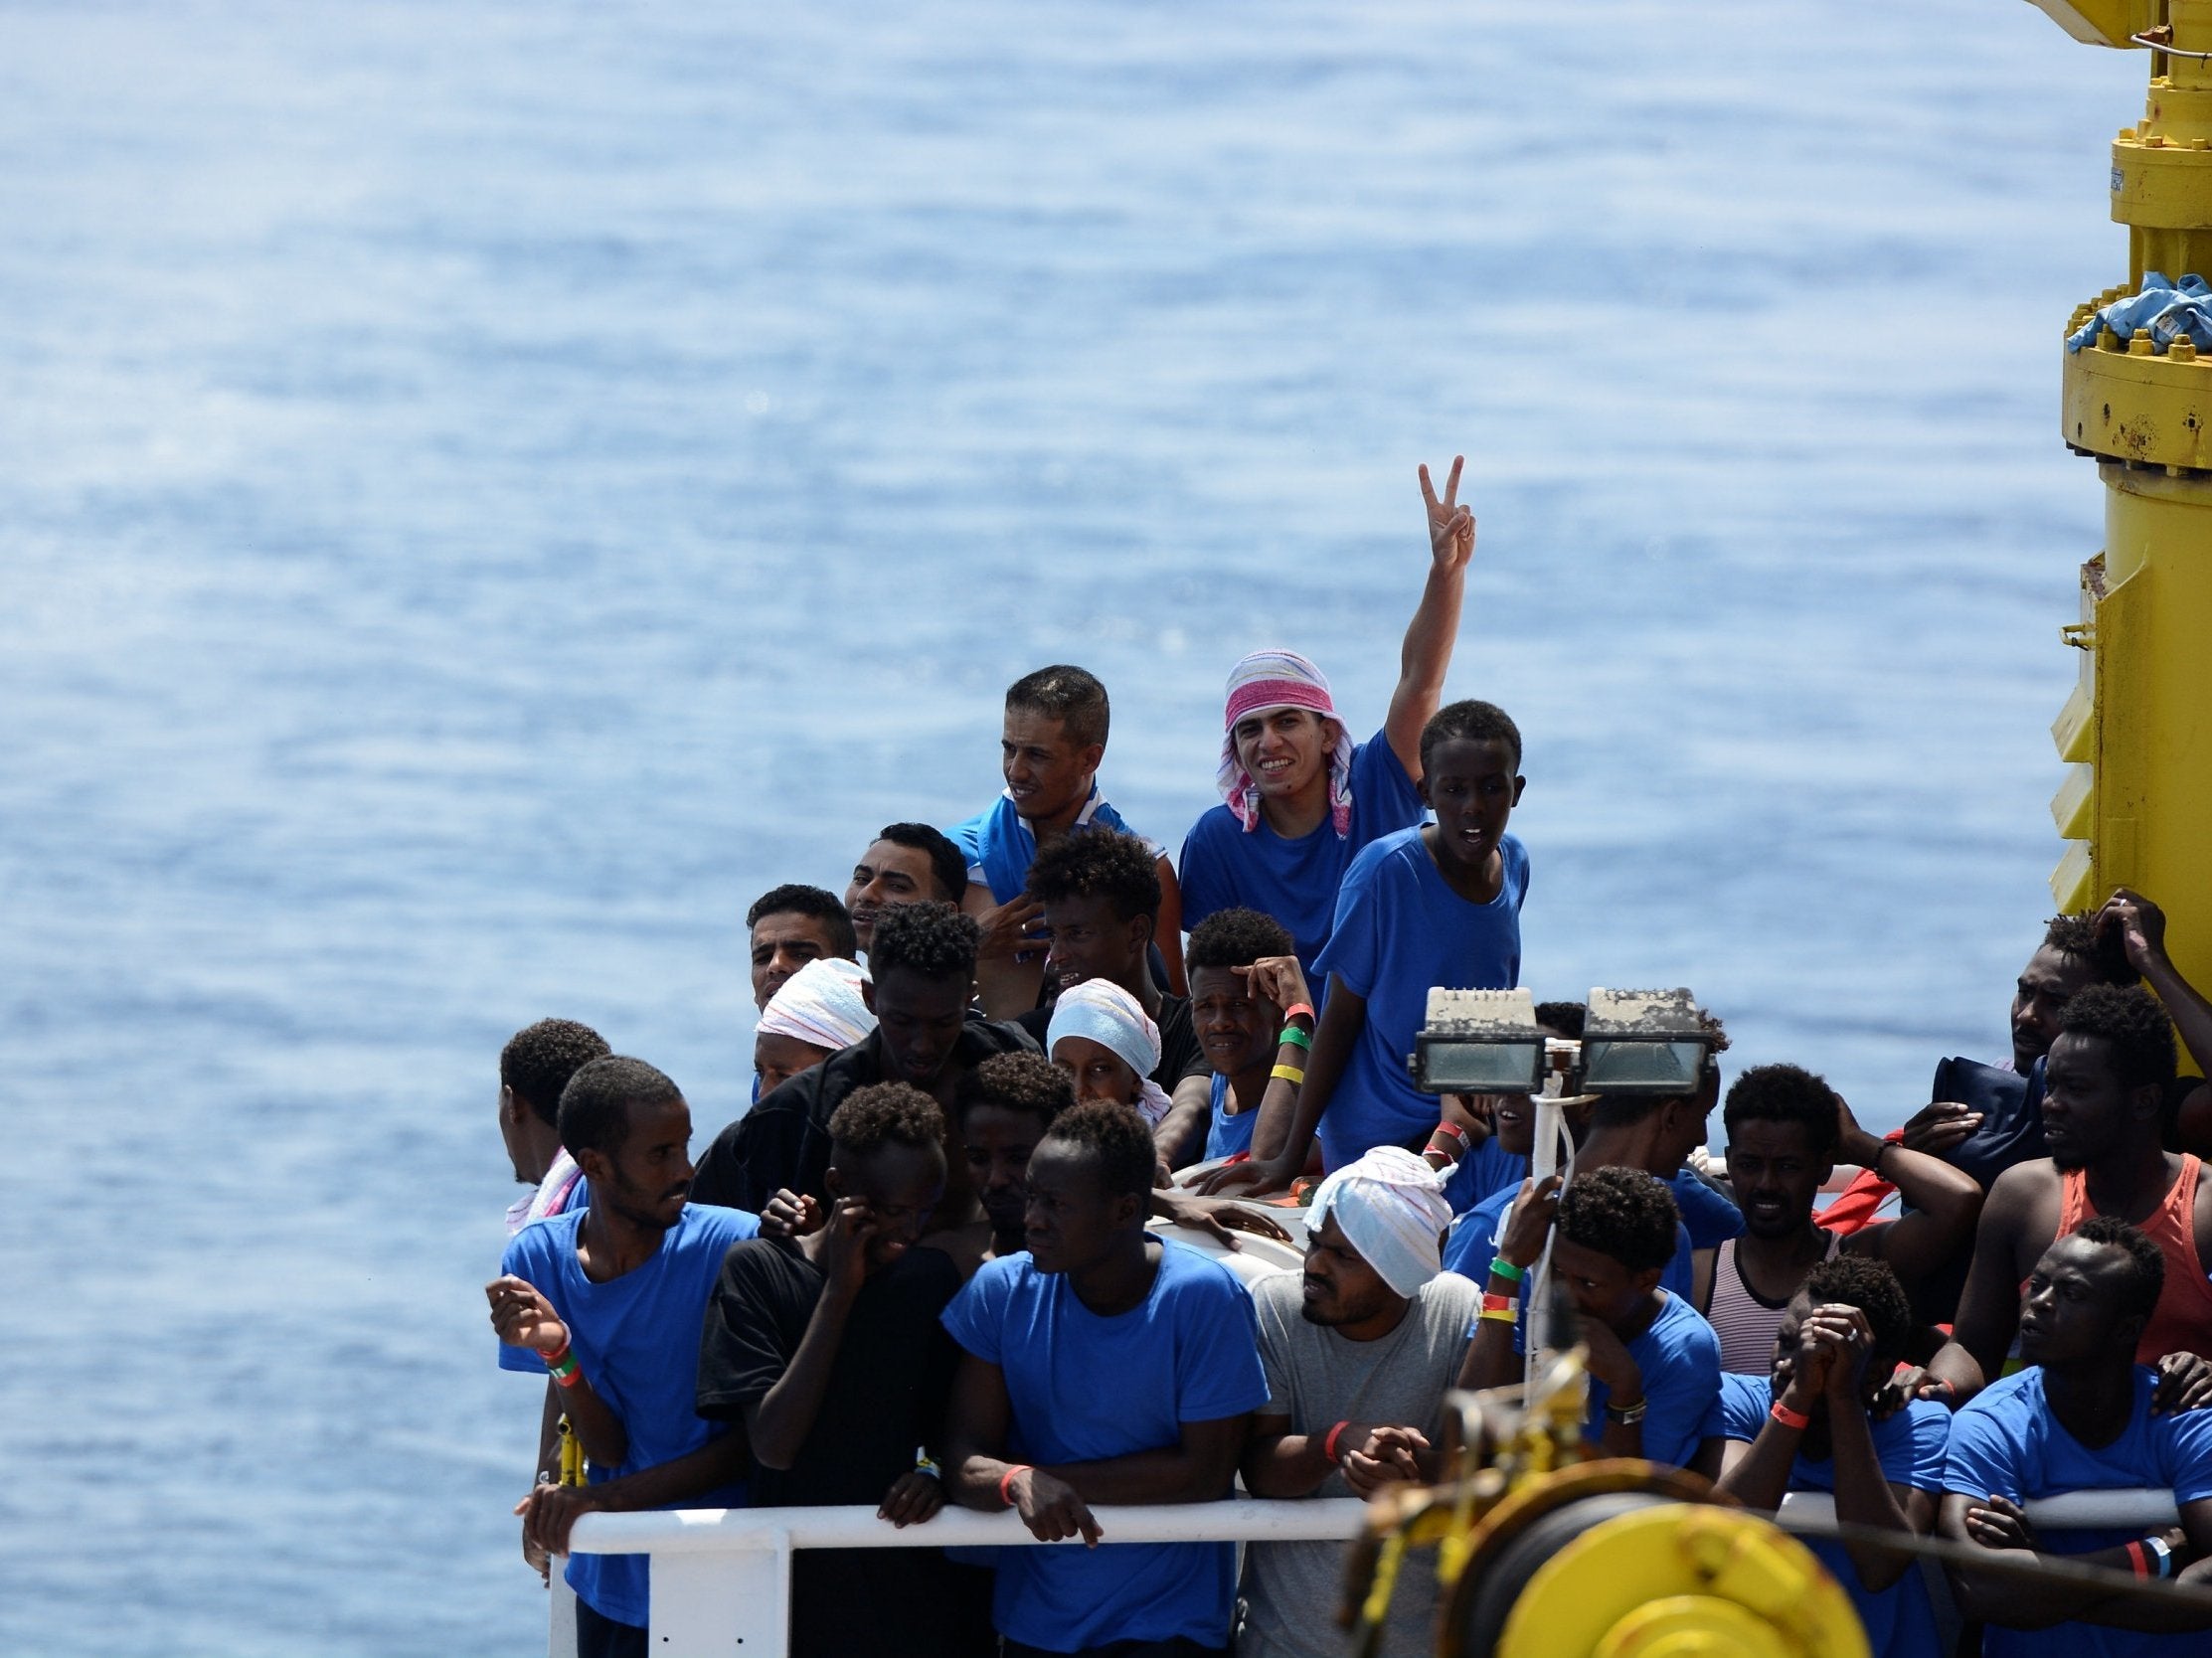 Migrants on board the MV Aquarius rescue ship